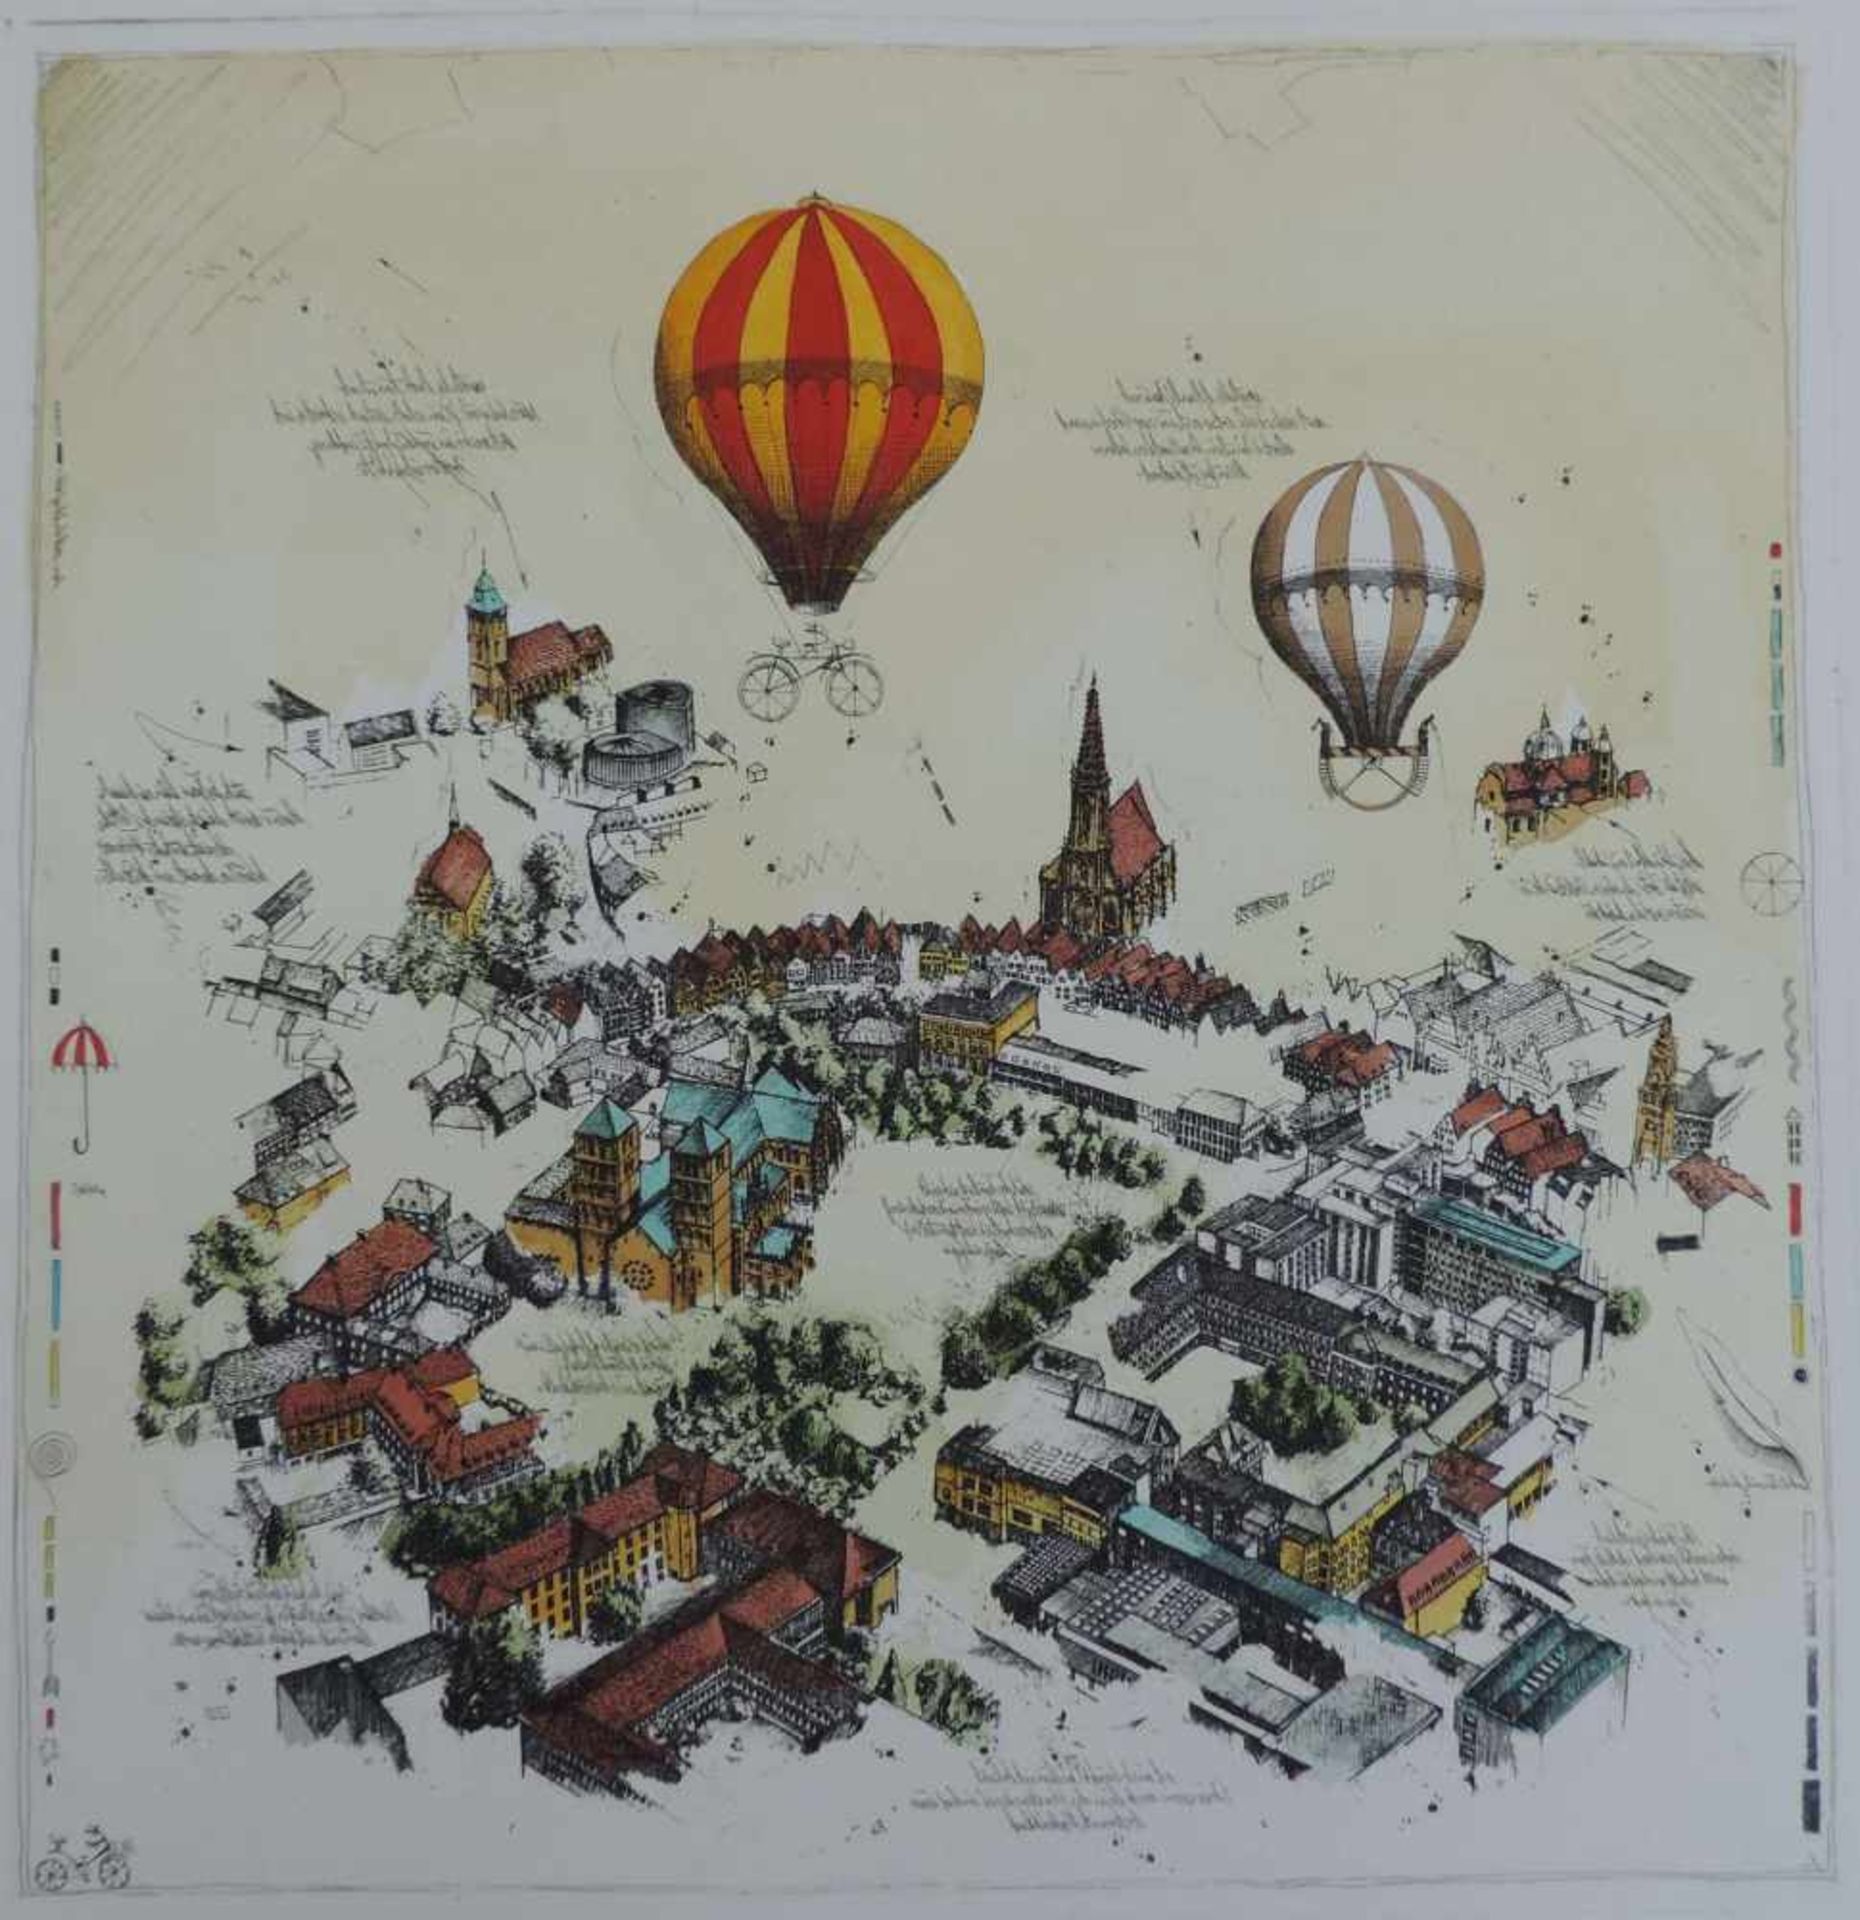 MÜNSTER, 3 colorierte Stiche mit Ansicht vom Domplatz u Umgebung, bez, sign u dat (19)93, - Image 3 of 5